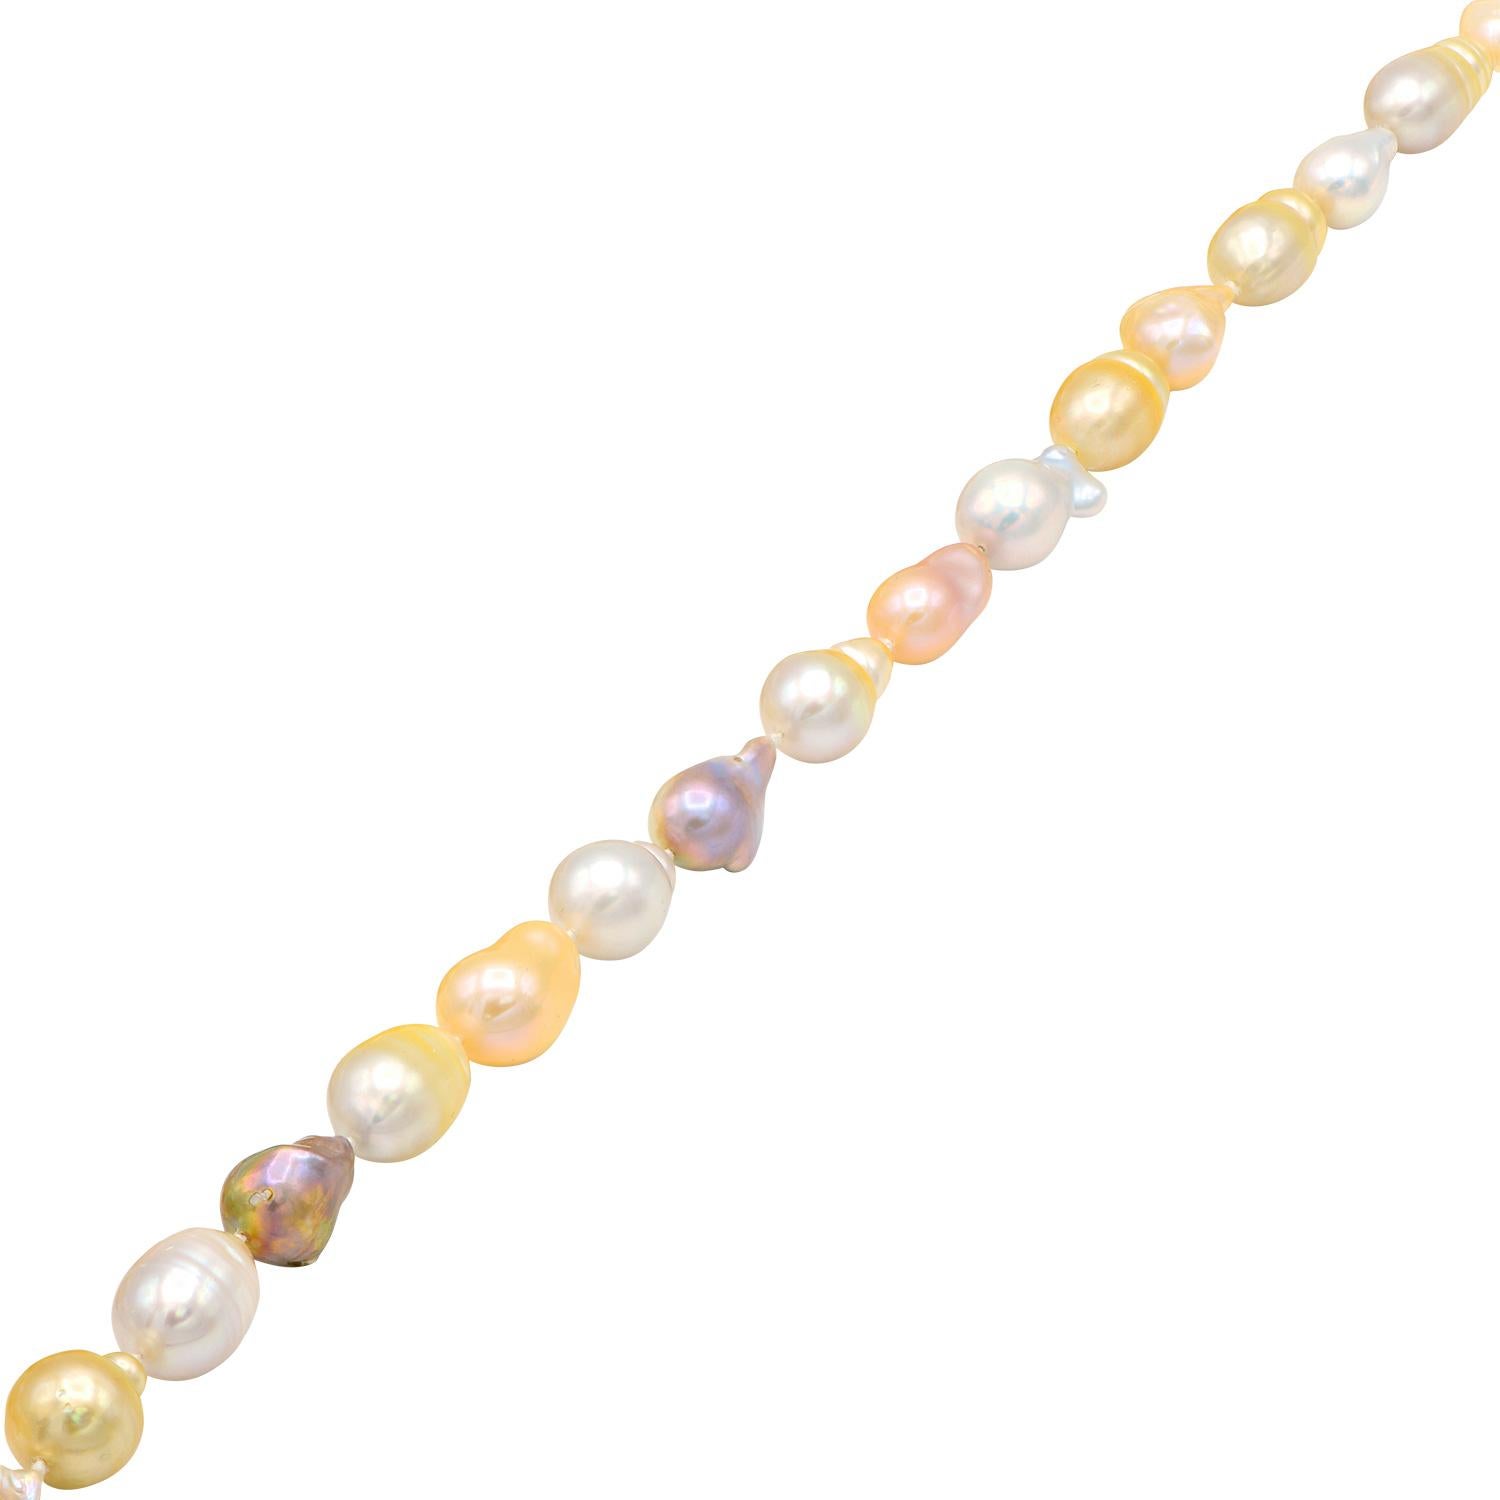 Diese wunderschöne Perlenkette besteht aus rosa Süßwasser-Barockperlen mit weißen und goldenen Südsee-Barockperlen. Die 45 Perlen bilden einen schönen 36-Zoll-Strang, der mit einem Doppelknoten zwischen jeder Perle aufgereiht und mit einem 14 Karat